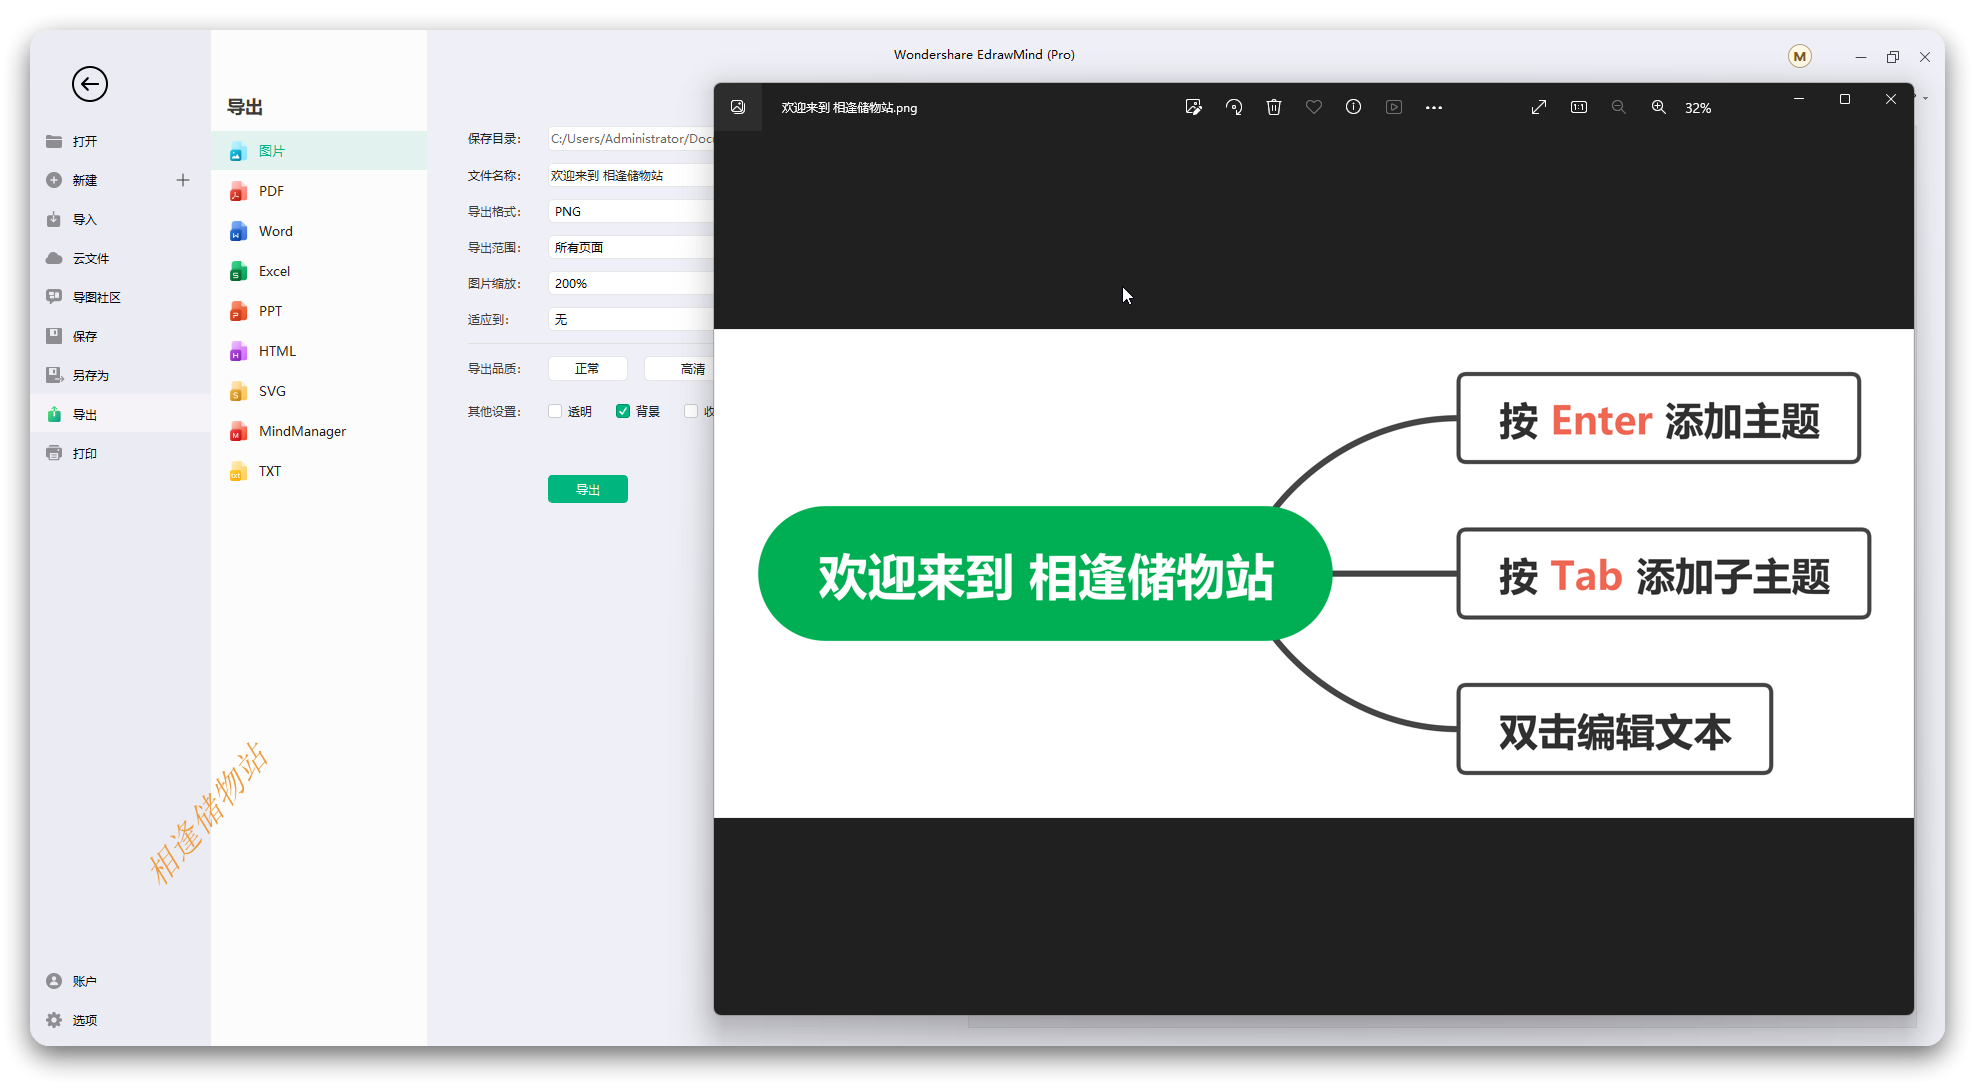 万兴亿图脑图EdrawMind中文版安装教程